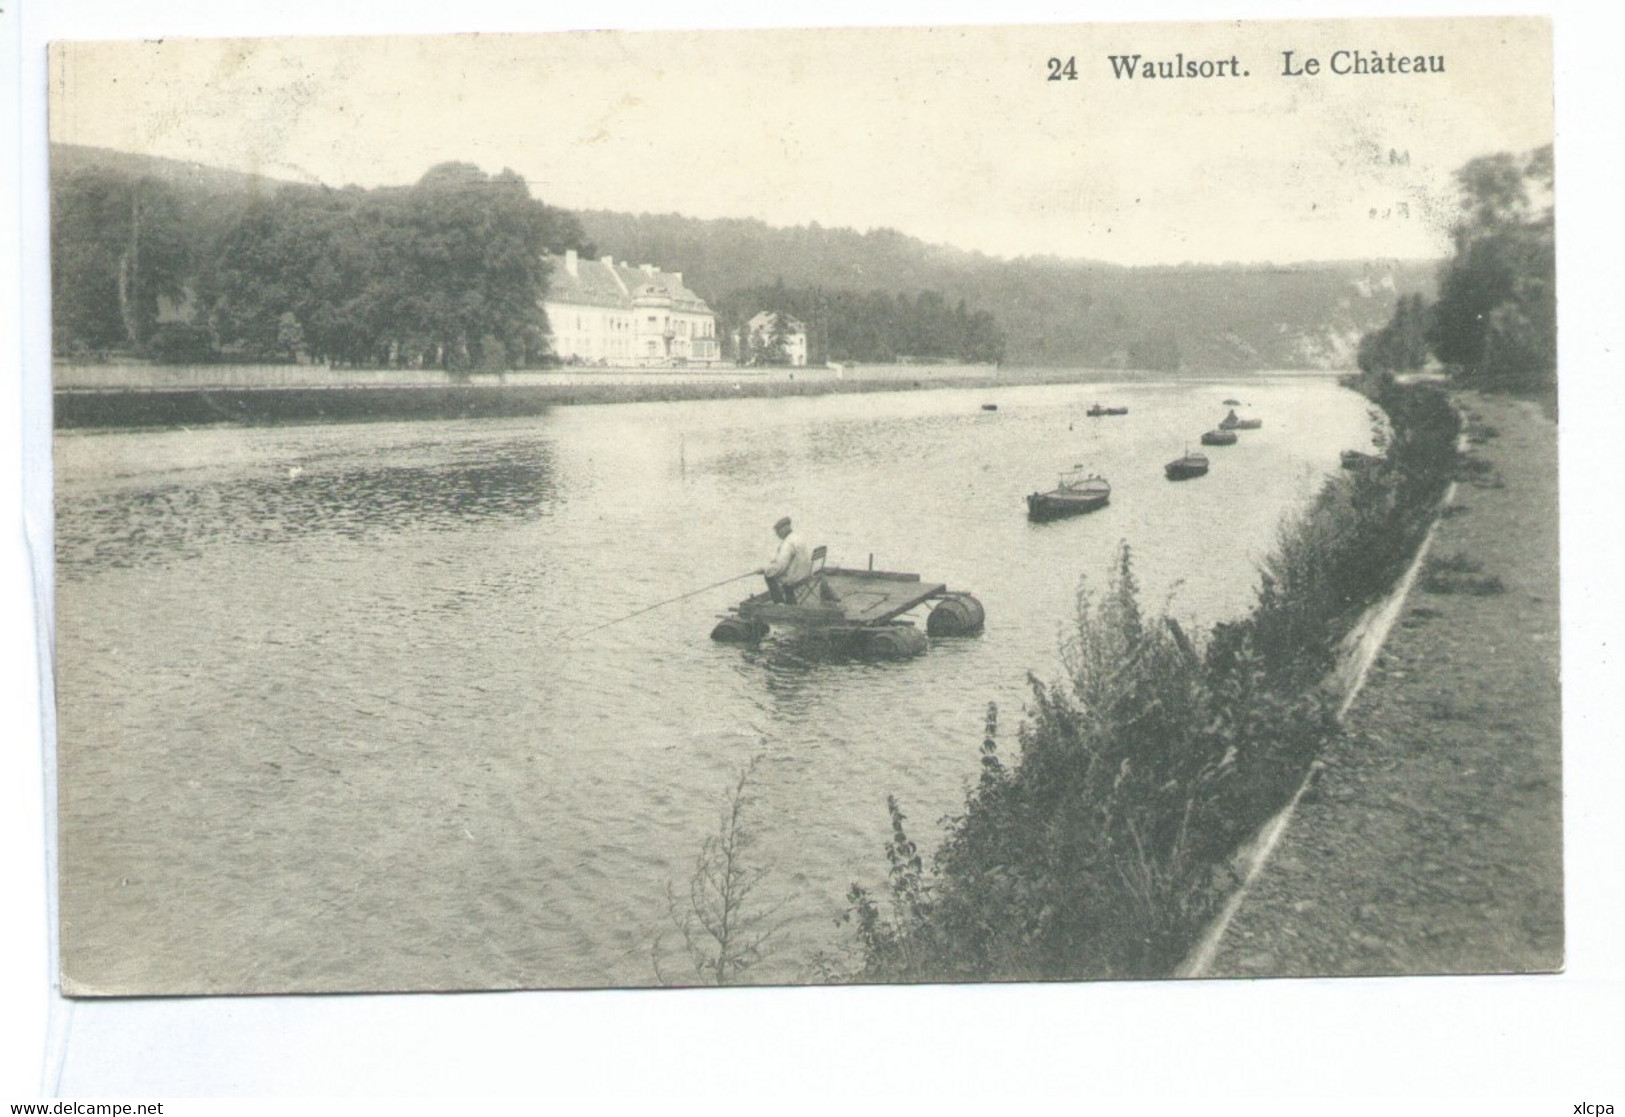 Waulsort Château Pêcheur - Hastière